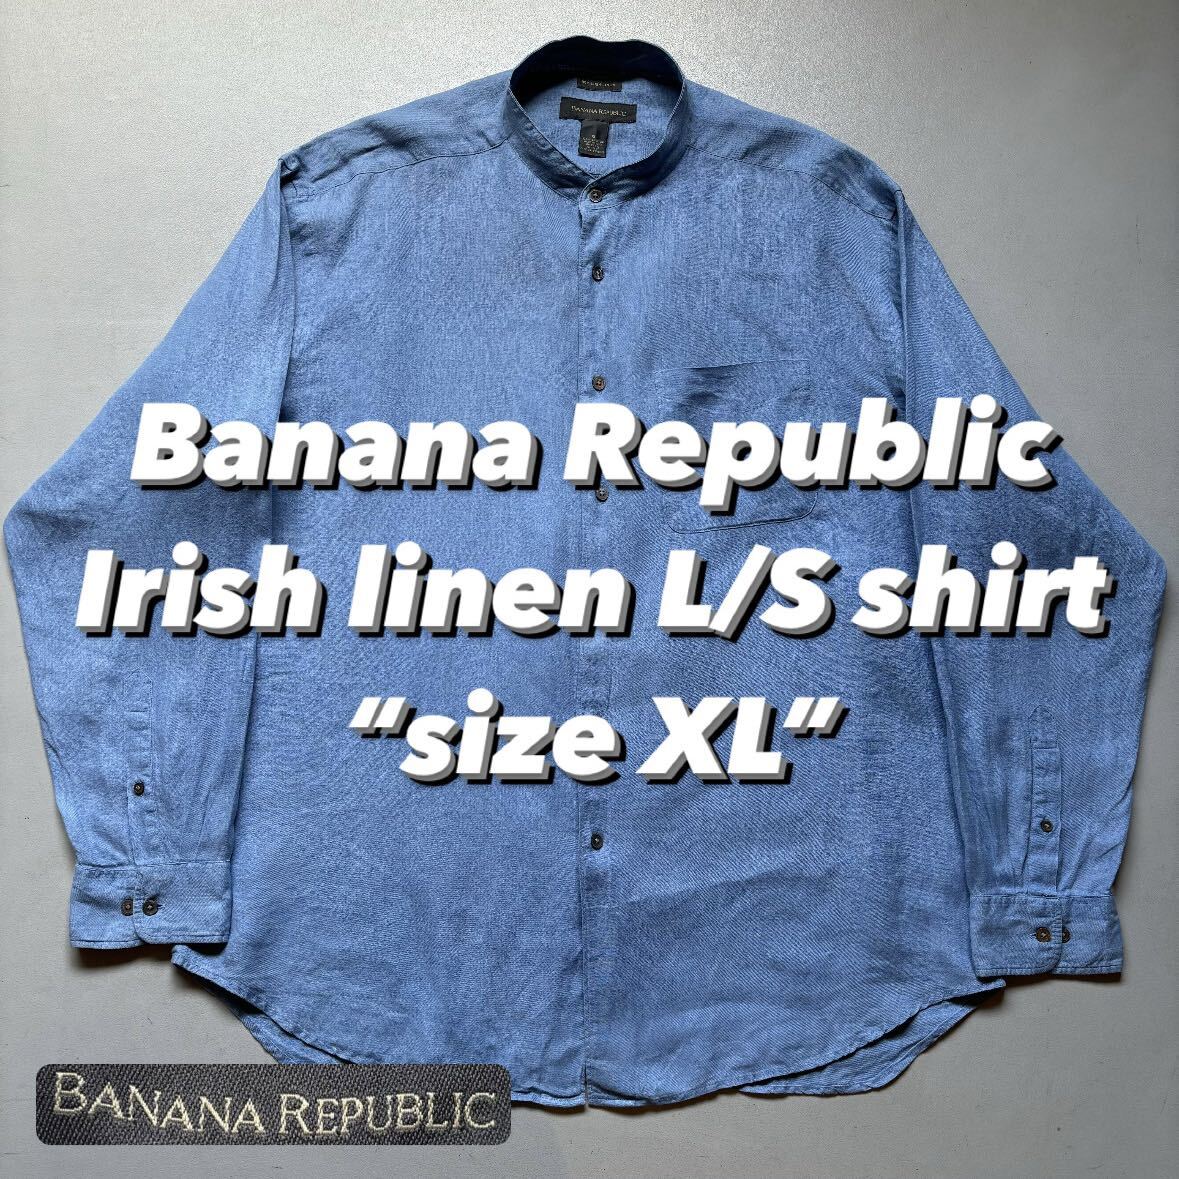 Banana Republic Irish linen L/S shirt “size XL” バナナリパブリック アイリッシュリネンシャツ 長袖シャツ_画像1